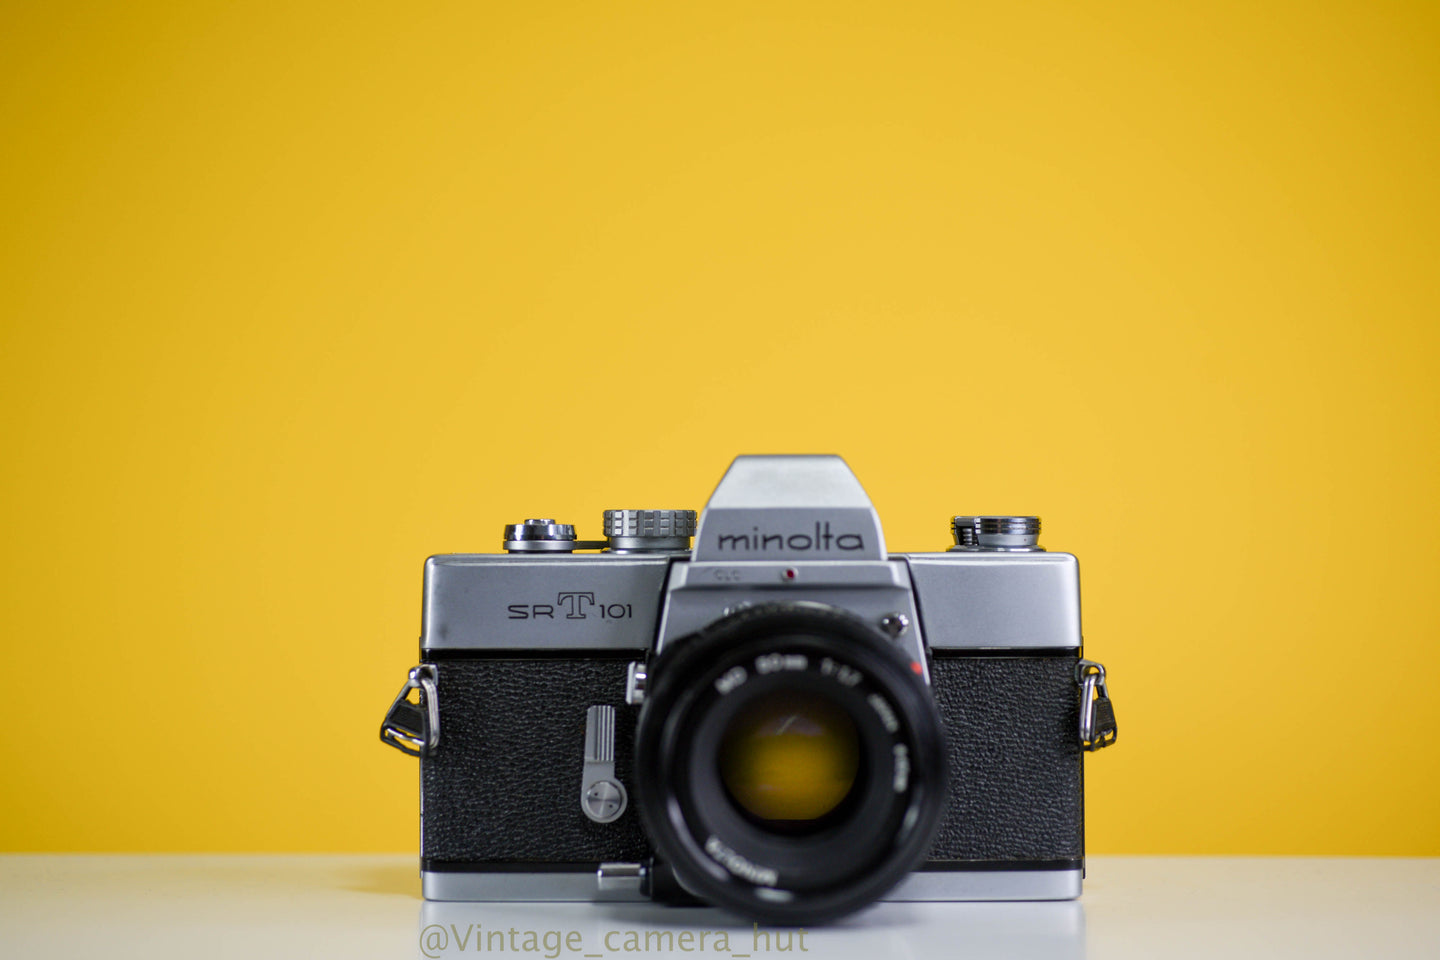 Minolta SRT101 35mm Film Camera with Minolta MD 50mm f/1.7